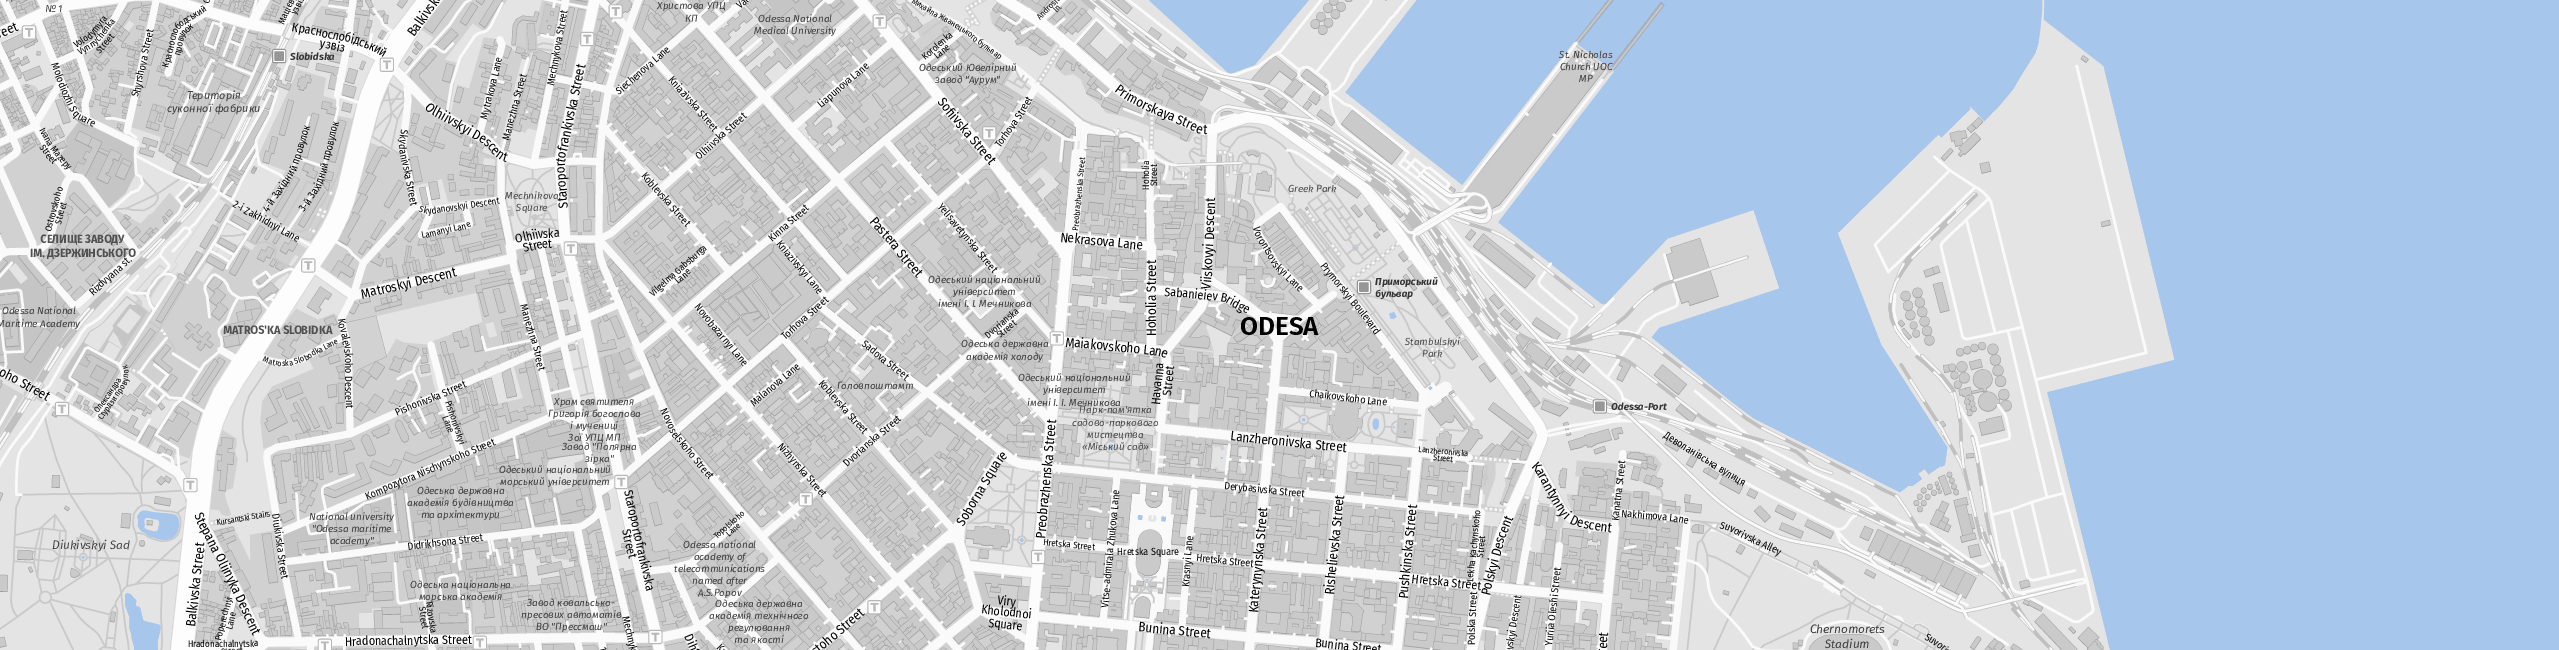 Stadtplan Odesa zum Downloaden.